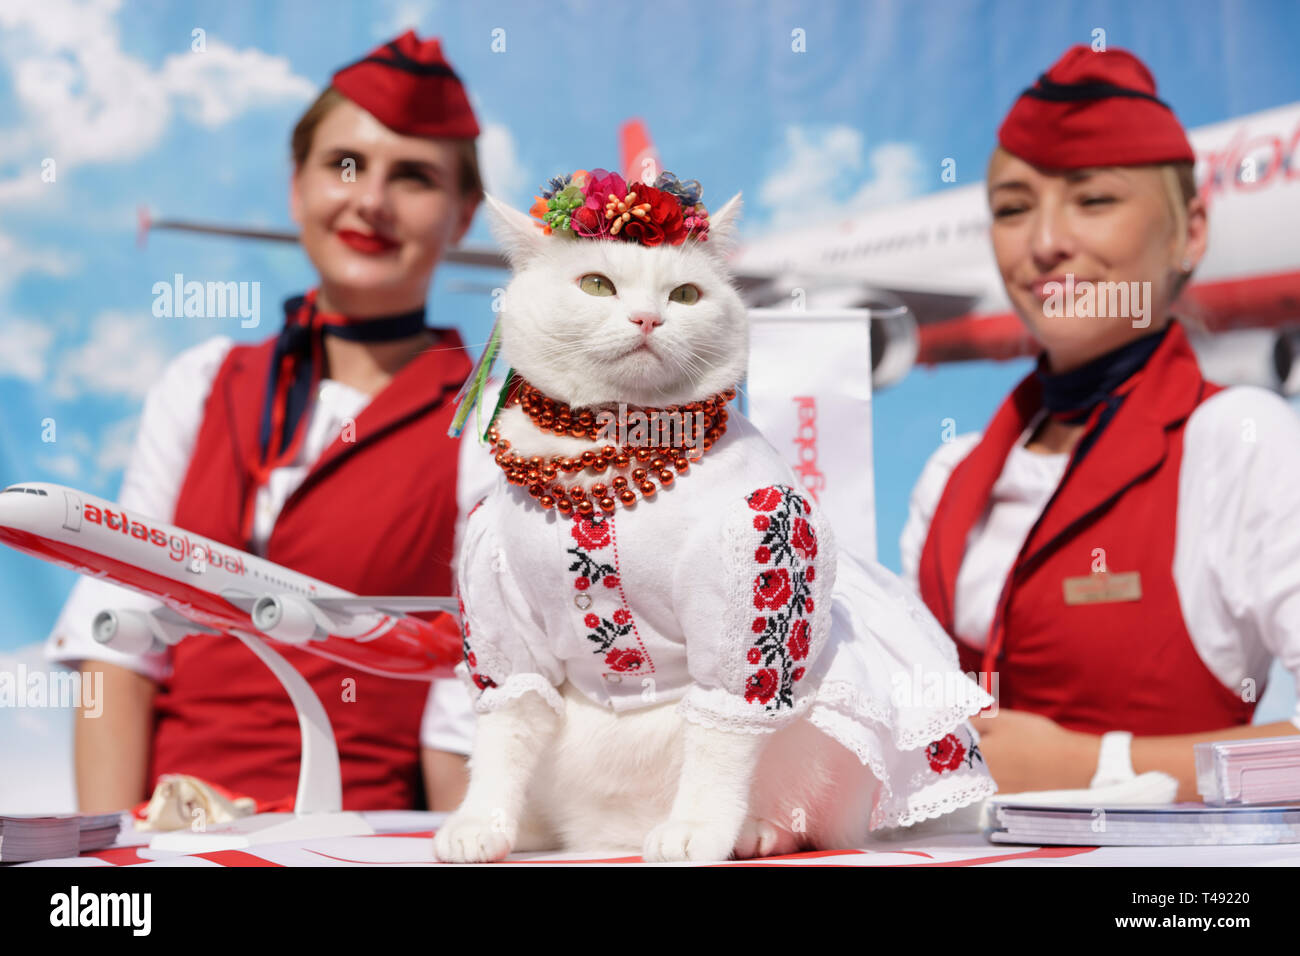 Kiev, Ucraina - 1 ottobre 2016: Gatto bianco vestito in costume nazionale ucraino e headdress fiore in promozione della compagnia aerea turca Atlas Global Foto Stock